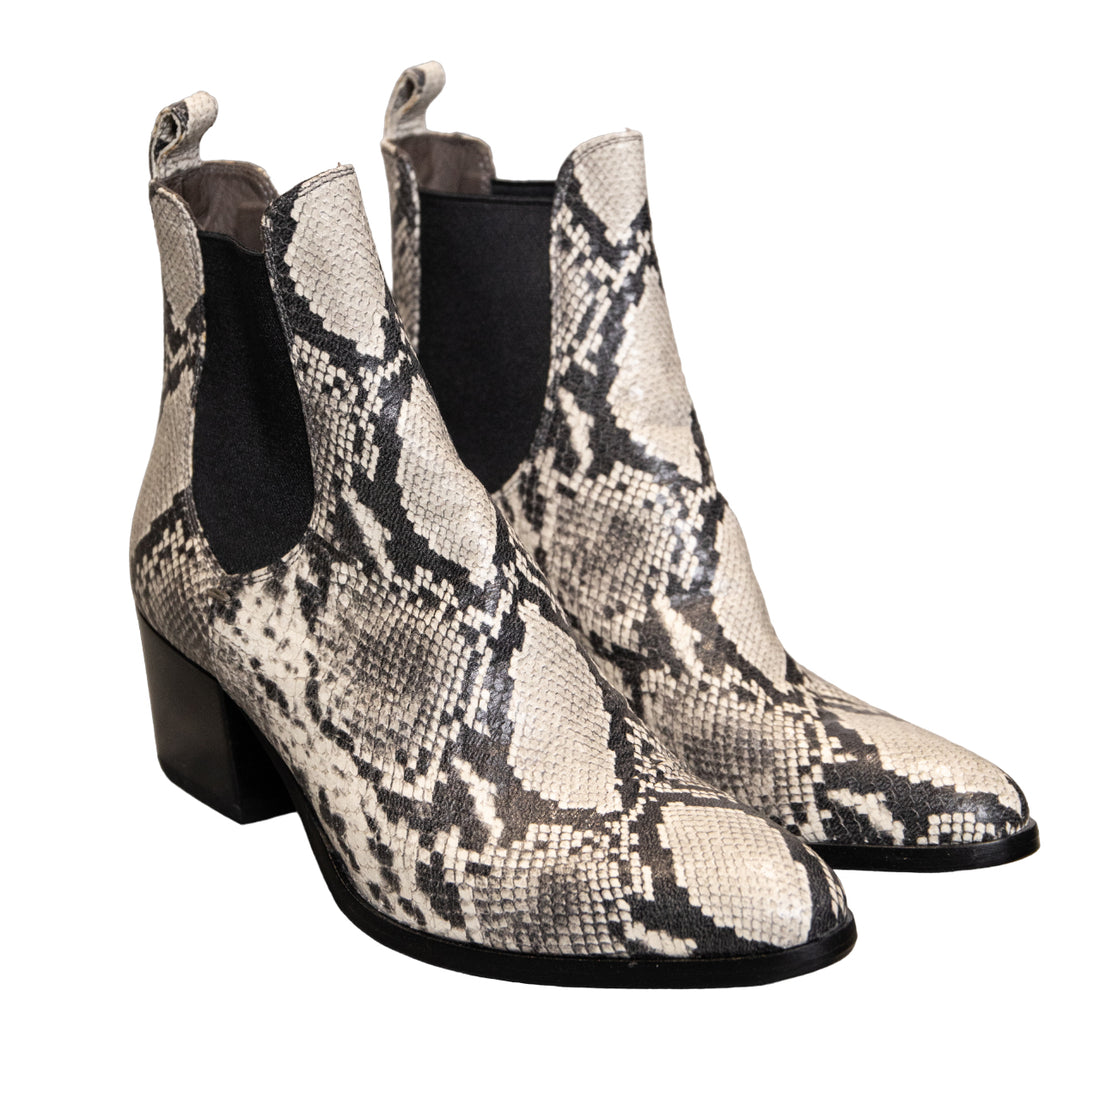 En Avant ankle boots in lizard print